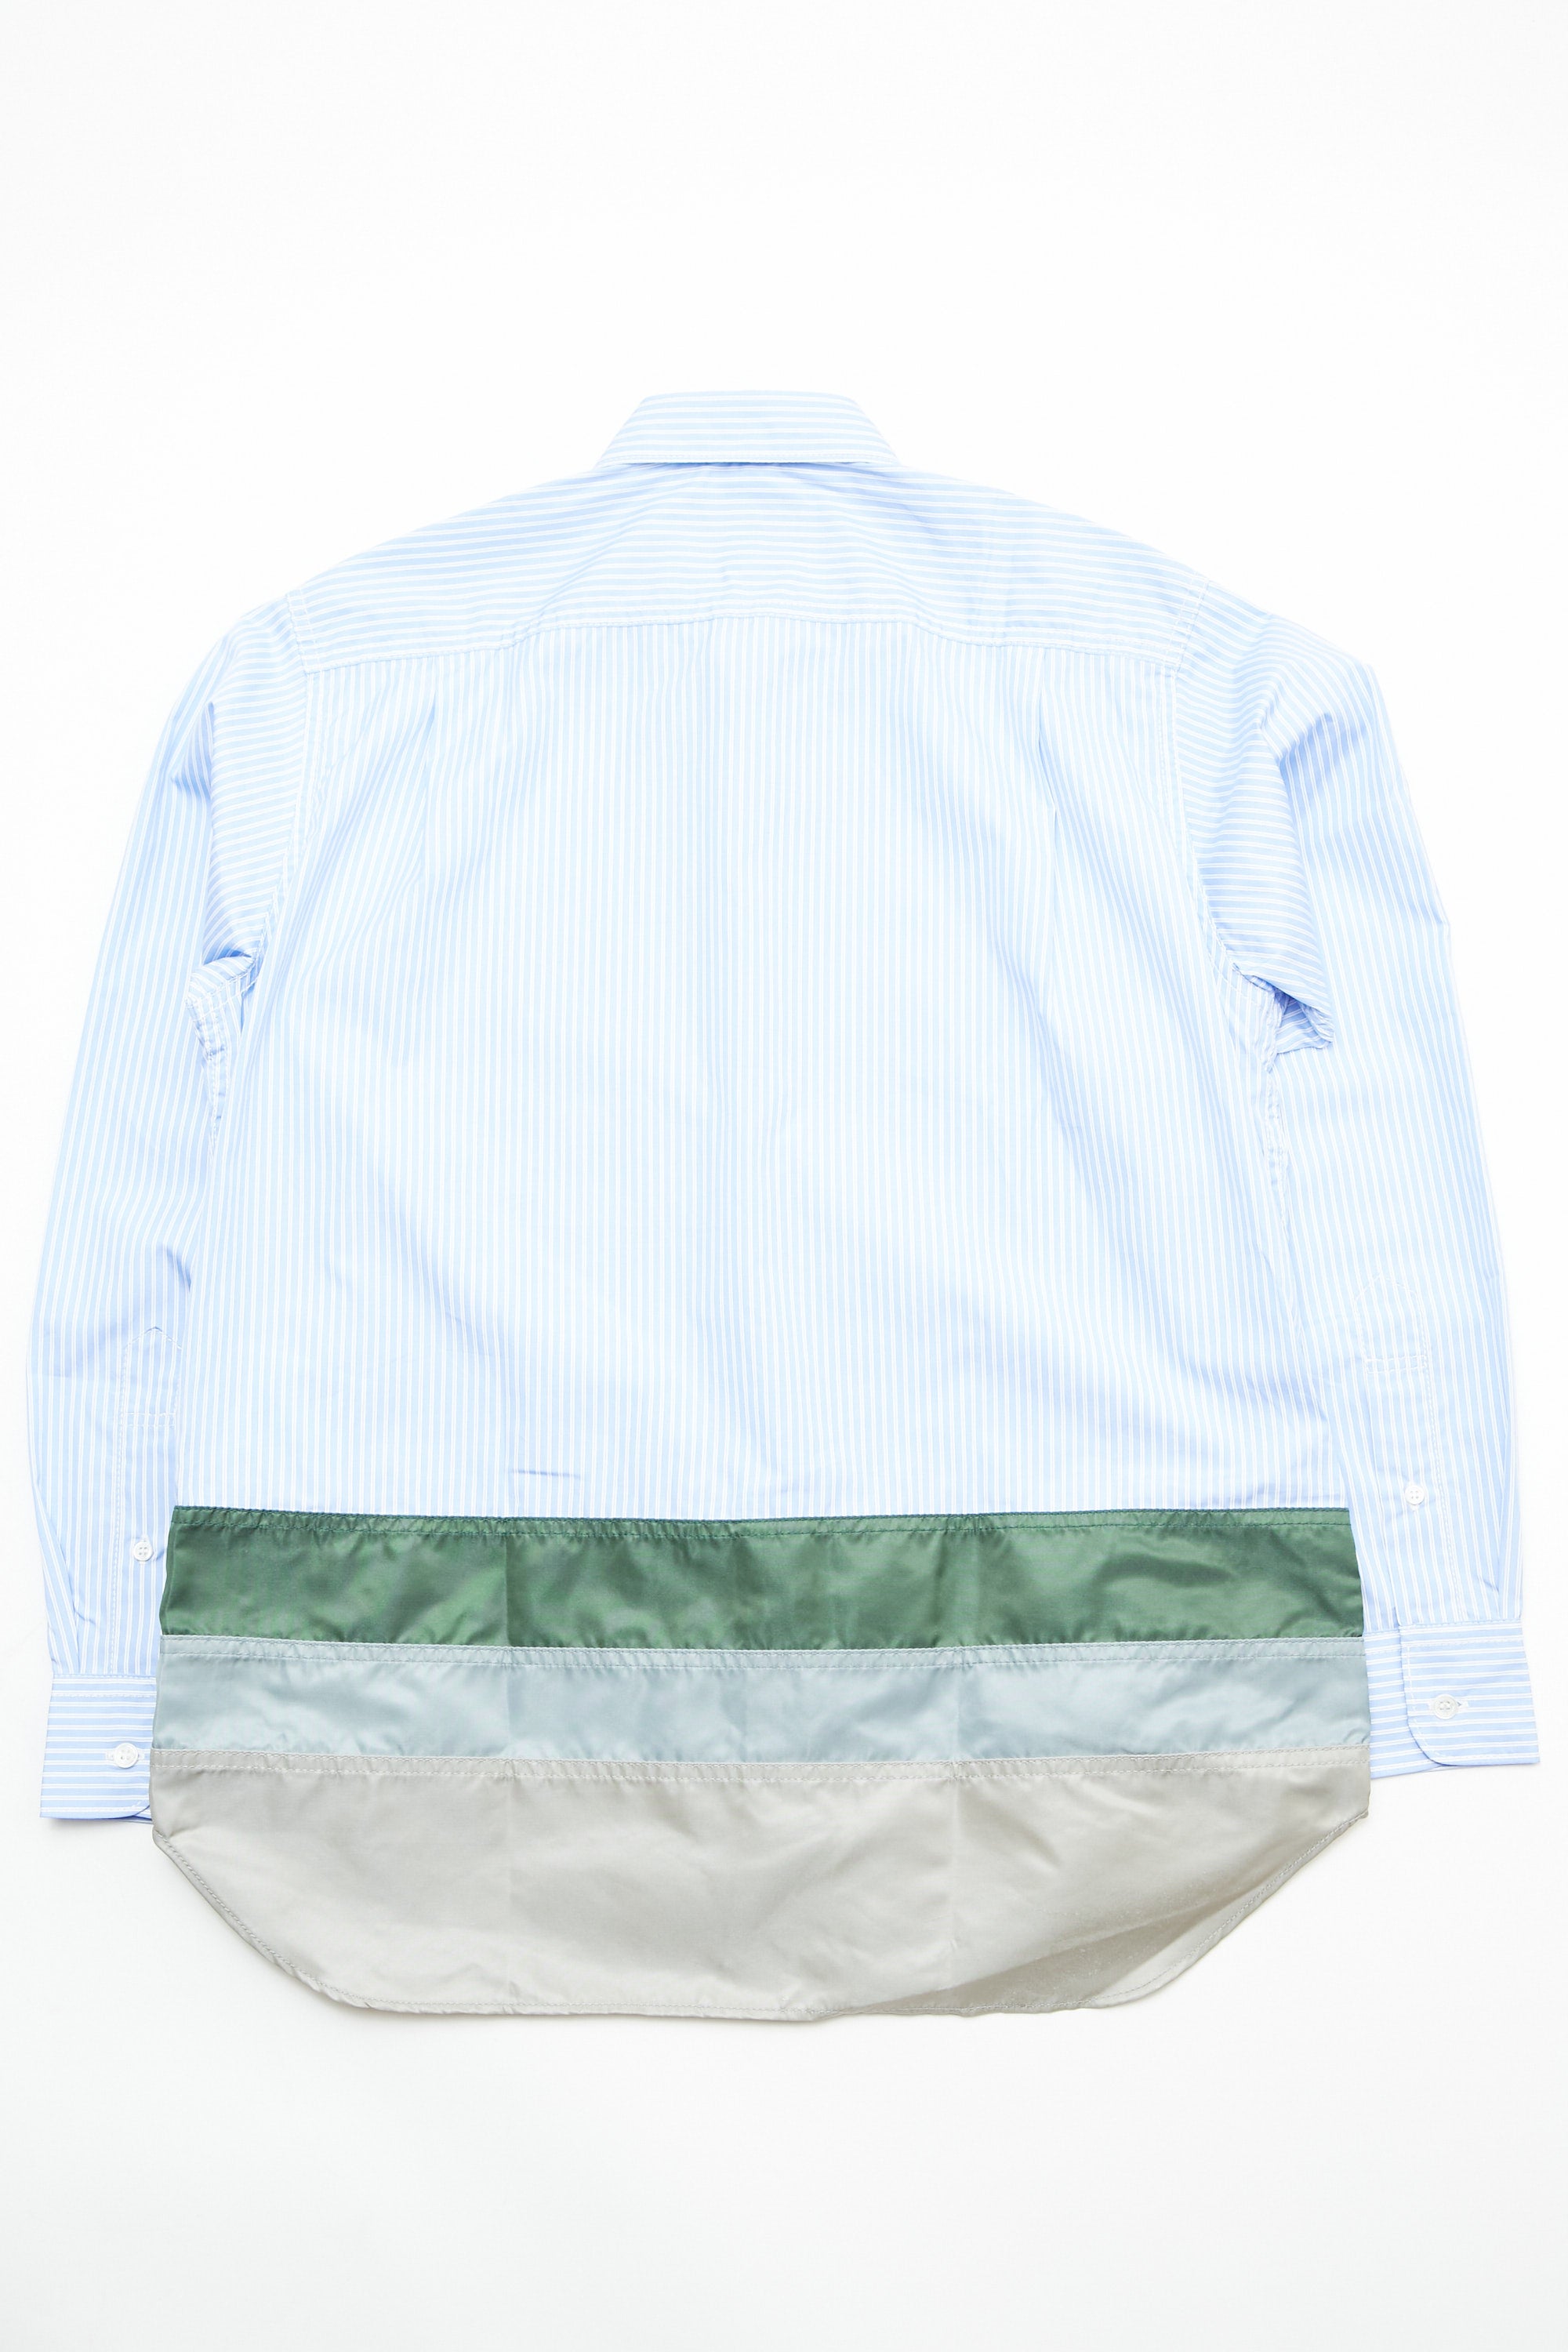 Comme des Garçons HOMME Cotton Stripe x Nylon Twill Shirt - Sax 